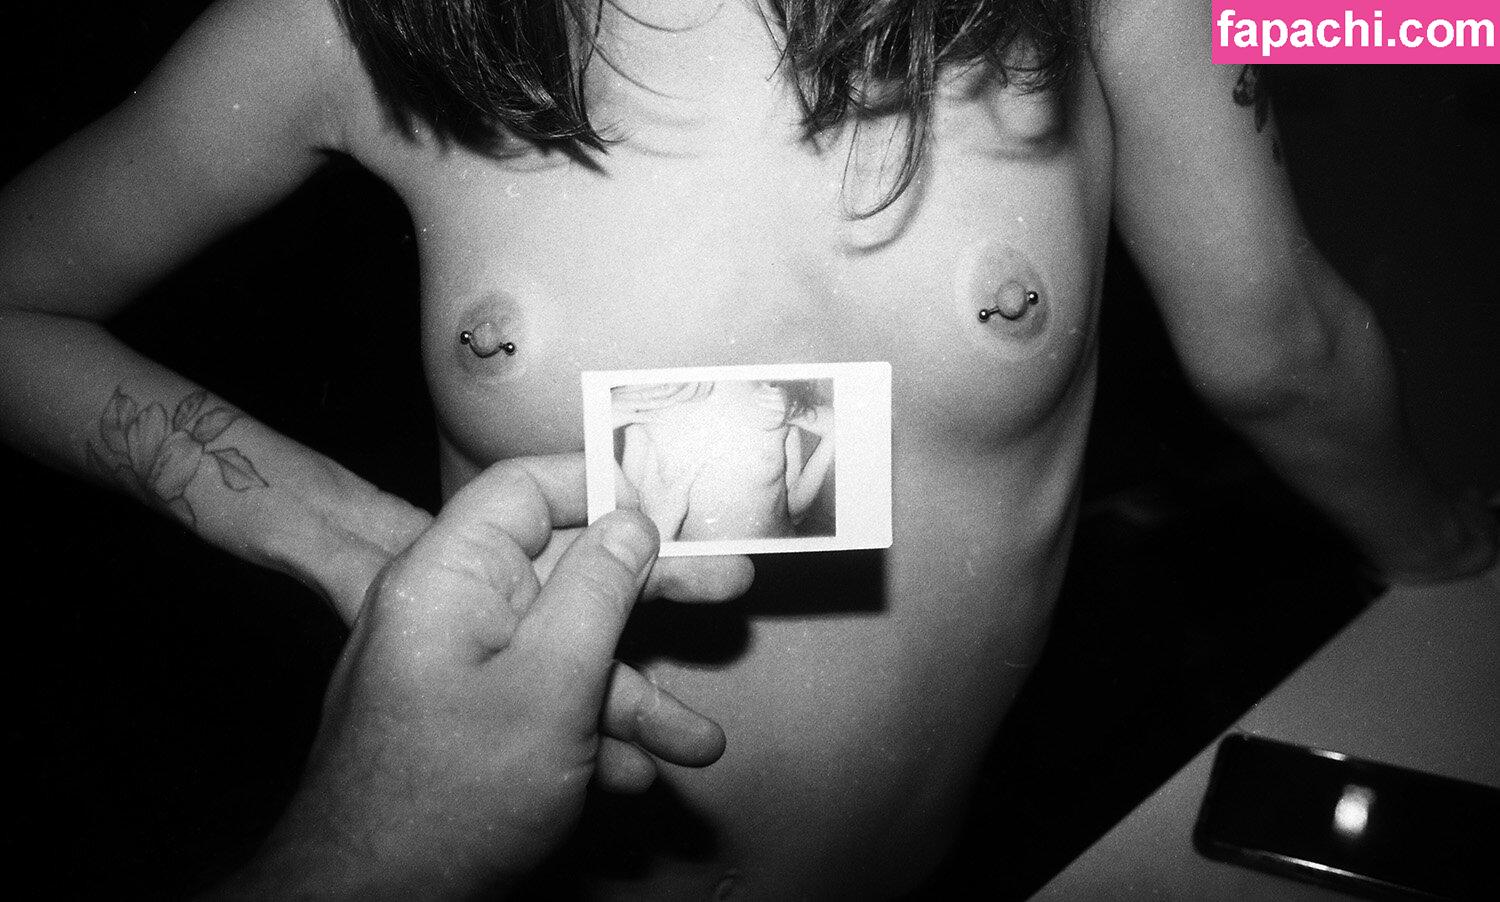 Nastya Pavonskaya / nast_okkk / nastyavalentine leaked nude photo #0035 from OnlyFans/Patreon